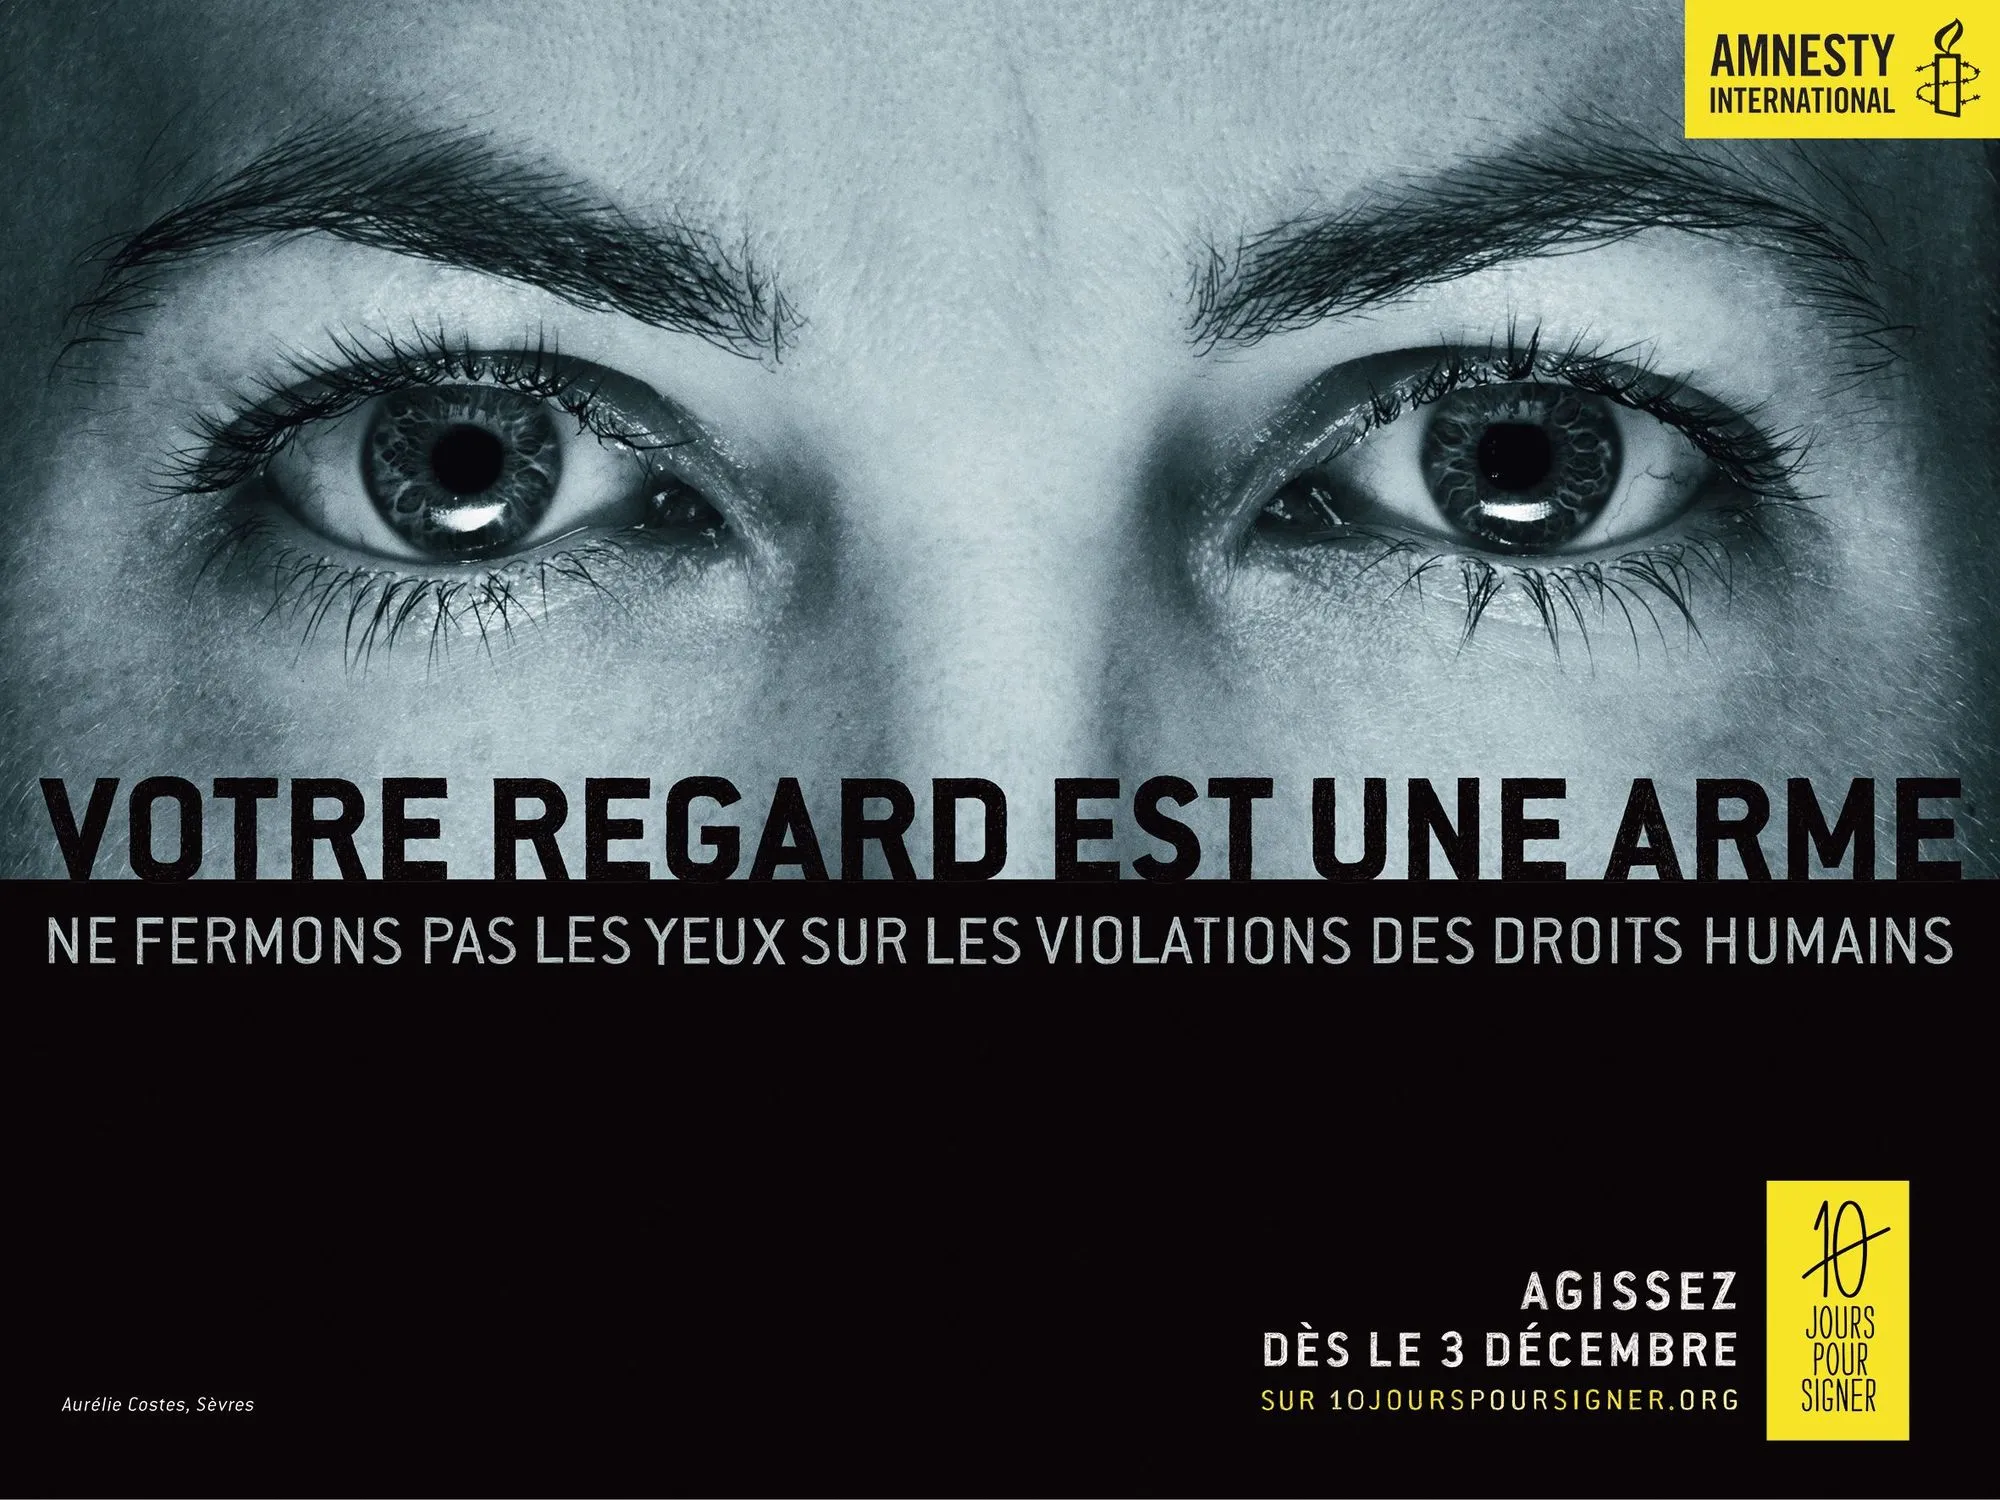 « Votre regard est une arme », affiche d'Amnesty International, 3 décembre 2014.